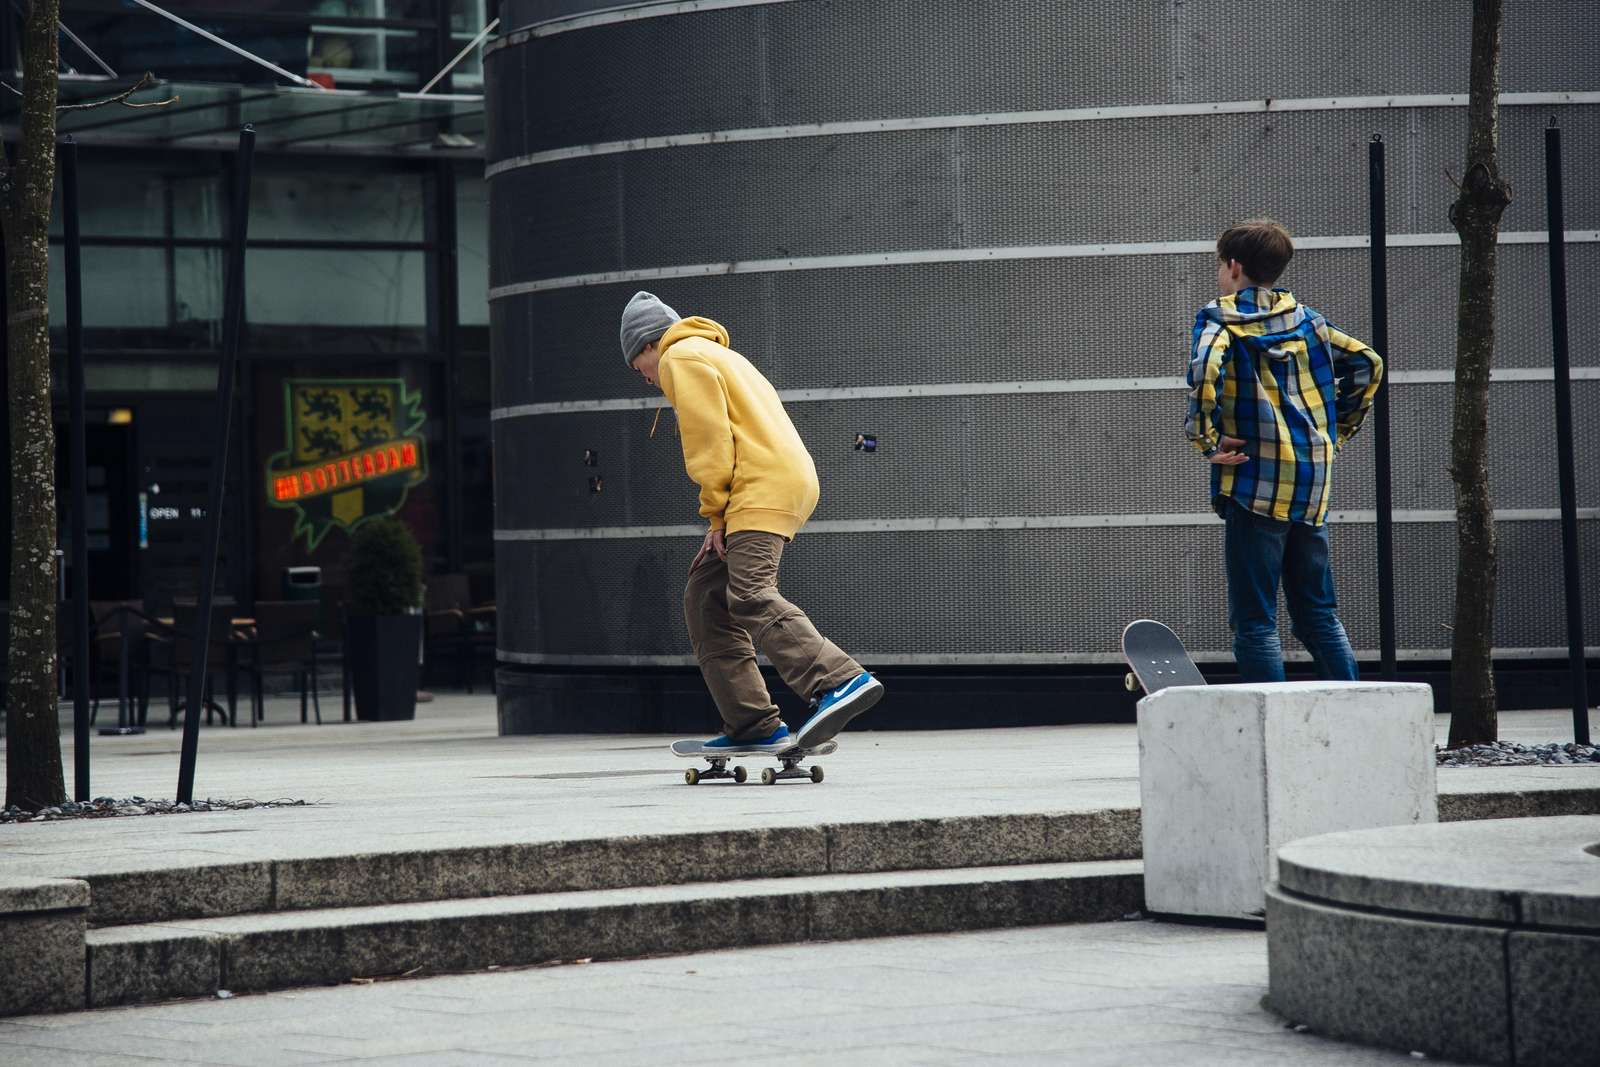 Skateboarding in the city